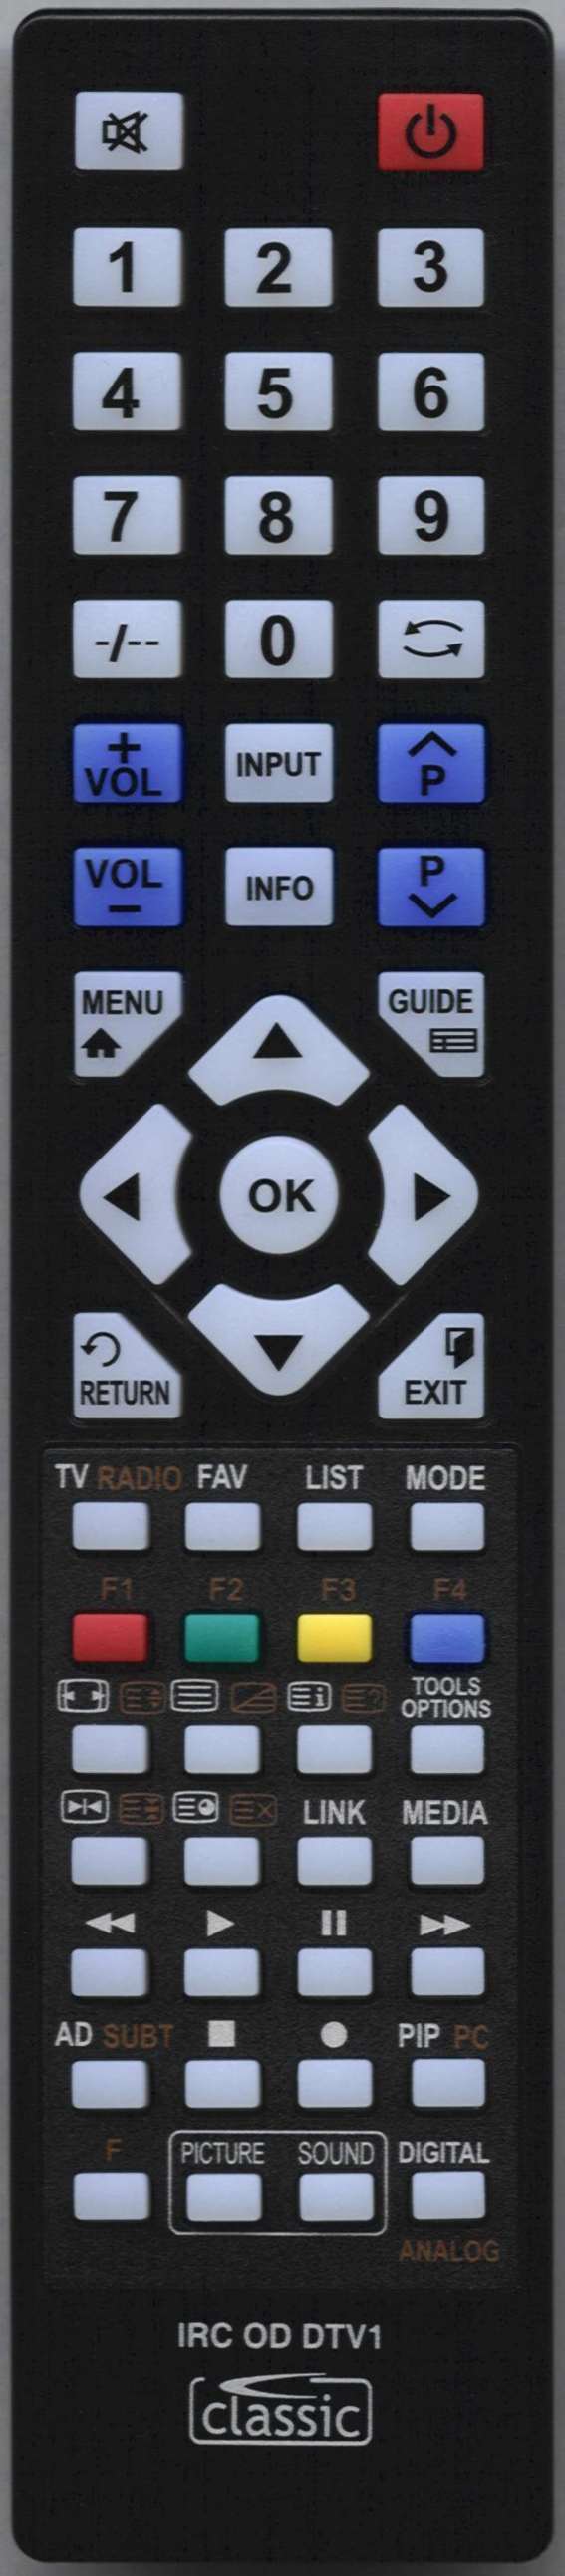 Neon RC08F Remote Control